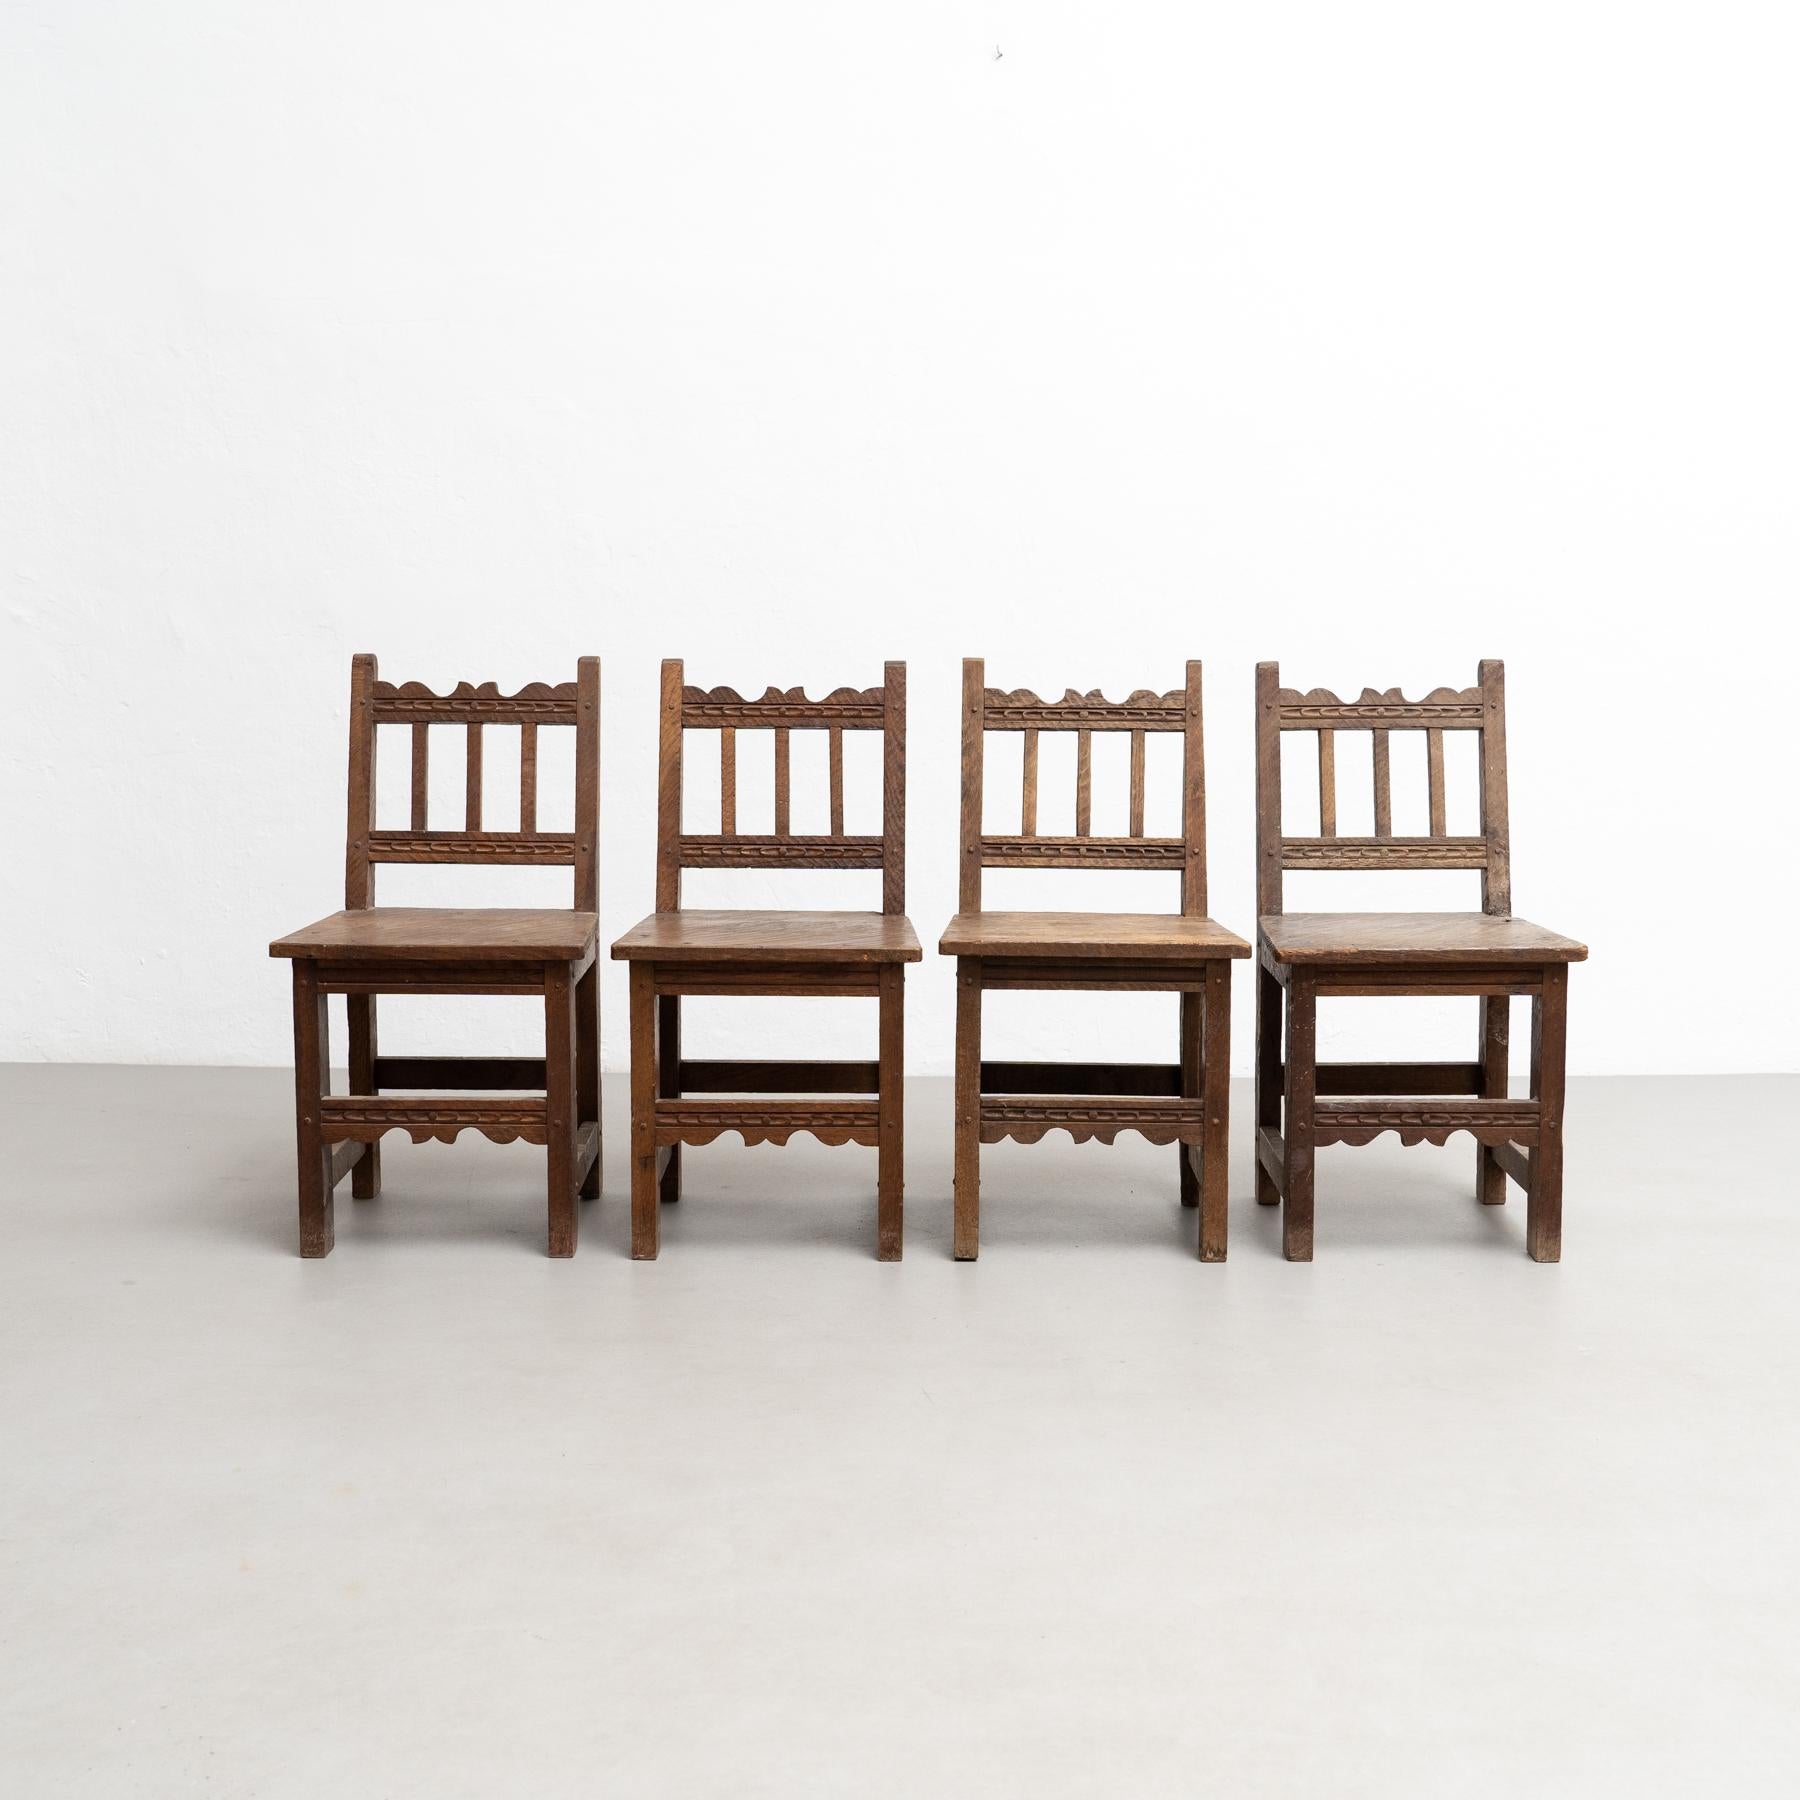 Conjunto de cuatro sillas de madera racionalistas modernas de mediados de siglo, encanto rústico, hacia 1940 Moderno de mediados de siglo